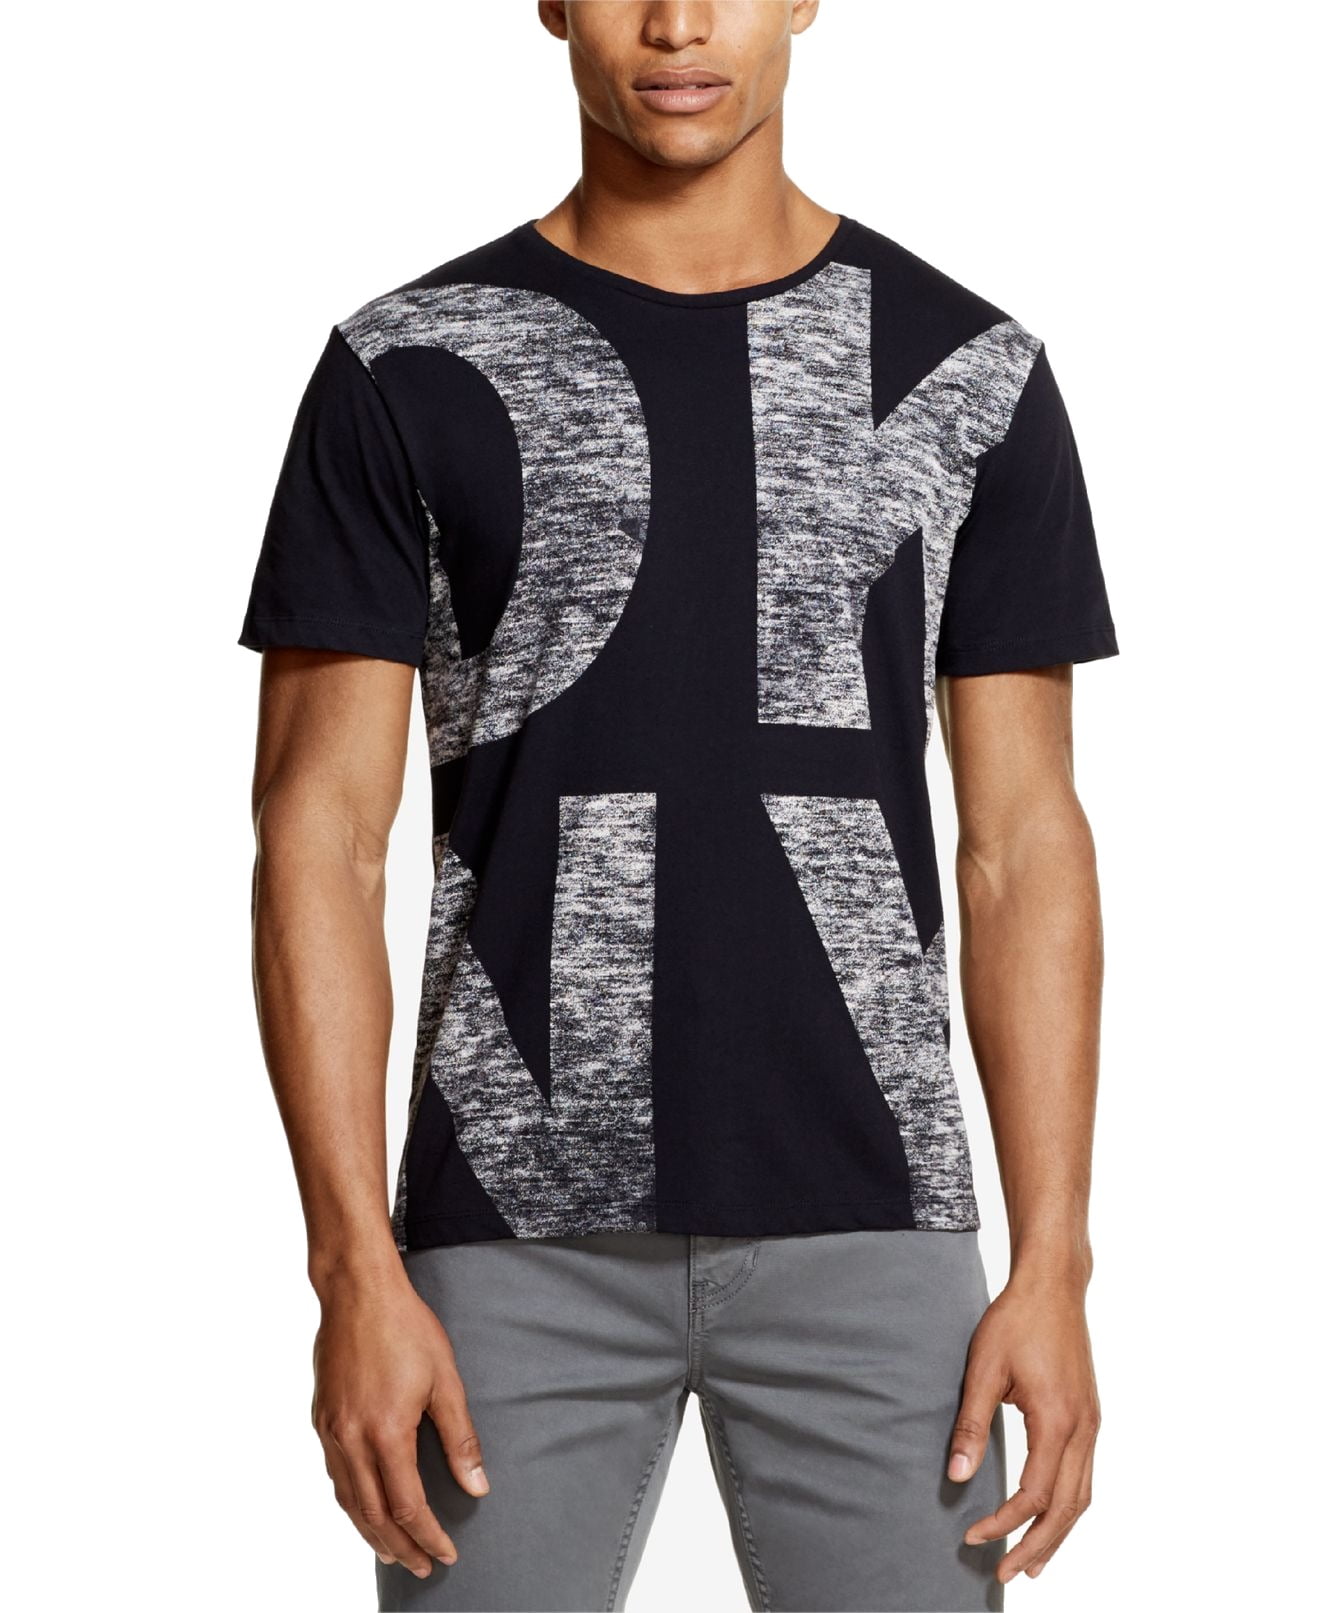 DKNY - Mens T-Shirt Logo Graphic-Print Crewneck Tee 2XL - Walmart.com ...